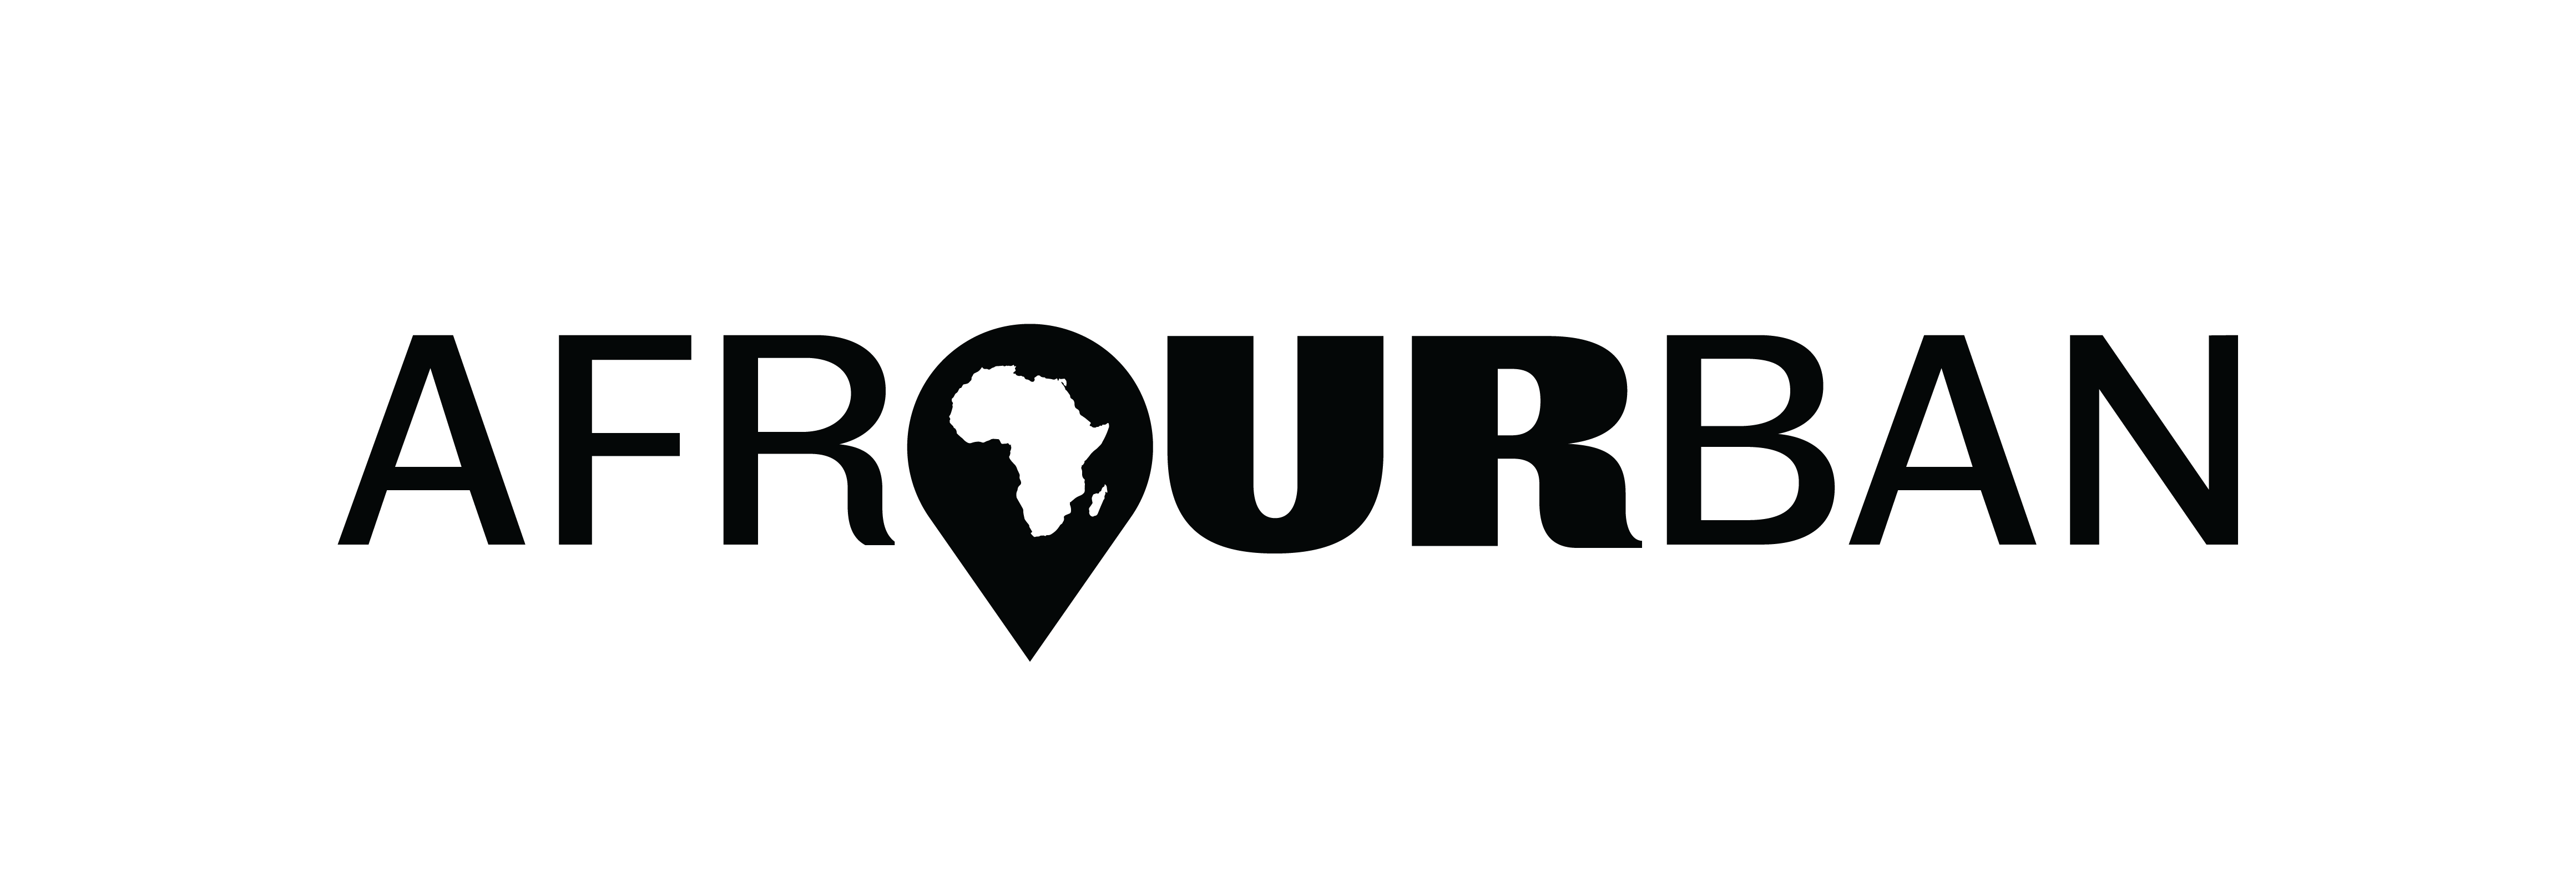 afrOURban logo